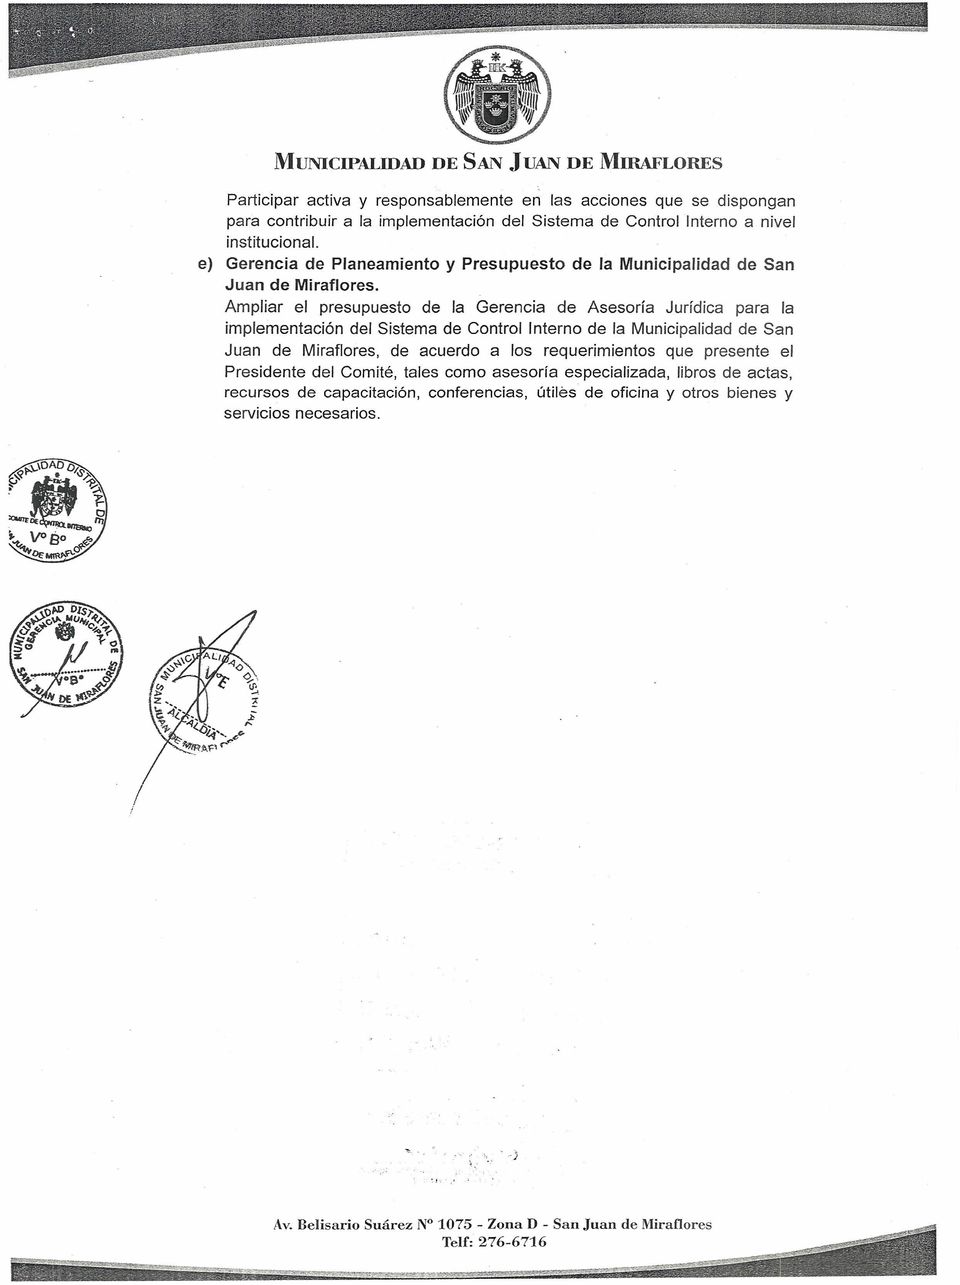 Ampliar el presupuesto de la Gerencia de Asesoría Jurídica para la implementación del Sistema de Control Interno de la Municipalidad de San Juan de Miraflores, de acuerdo a los